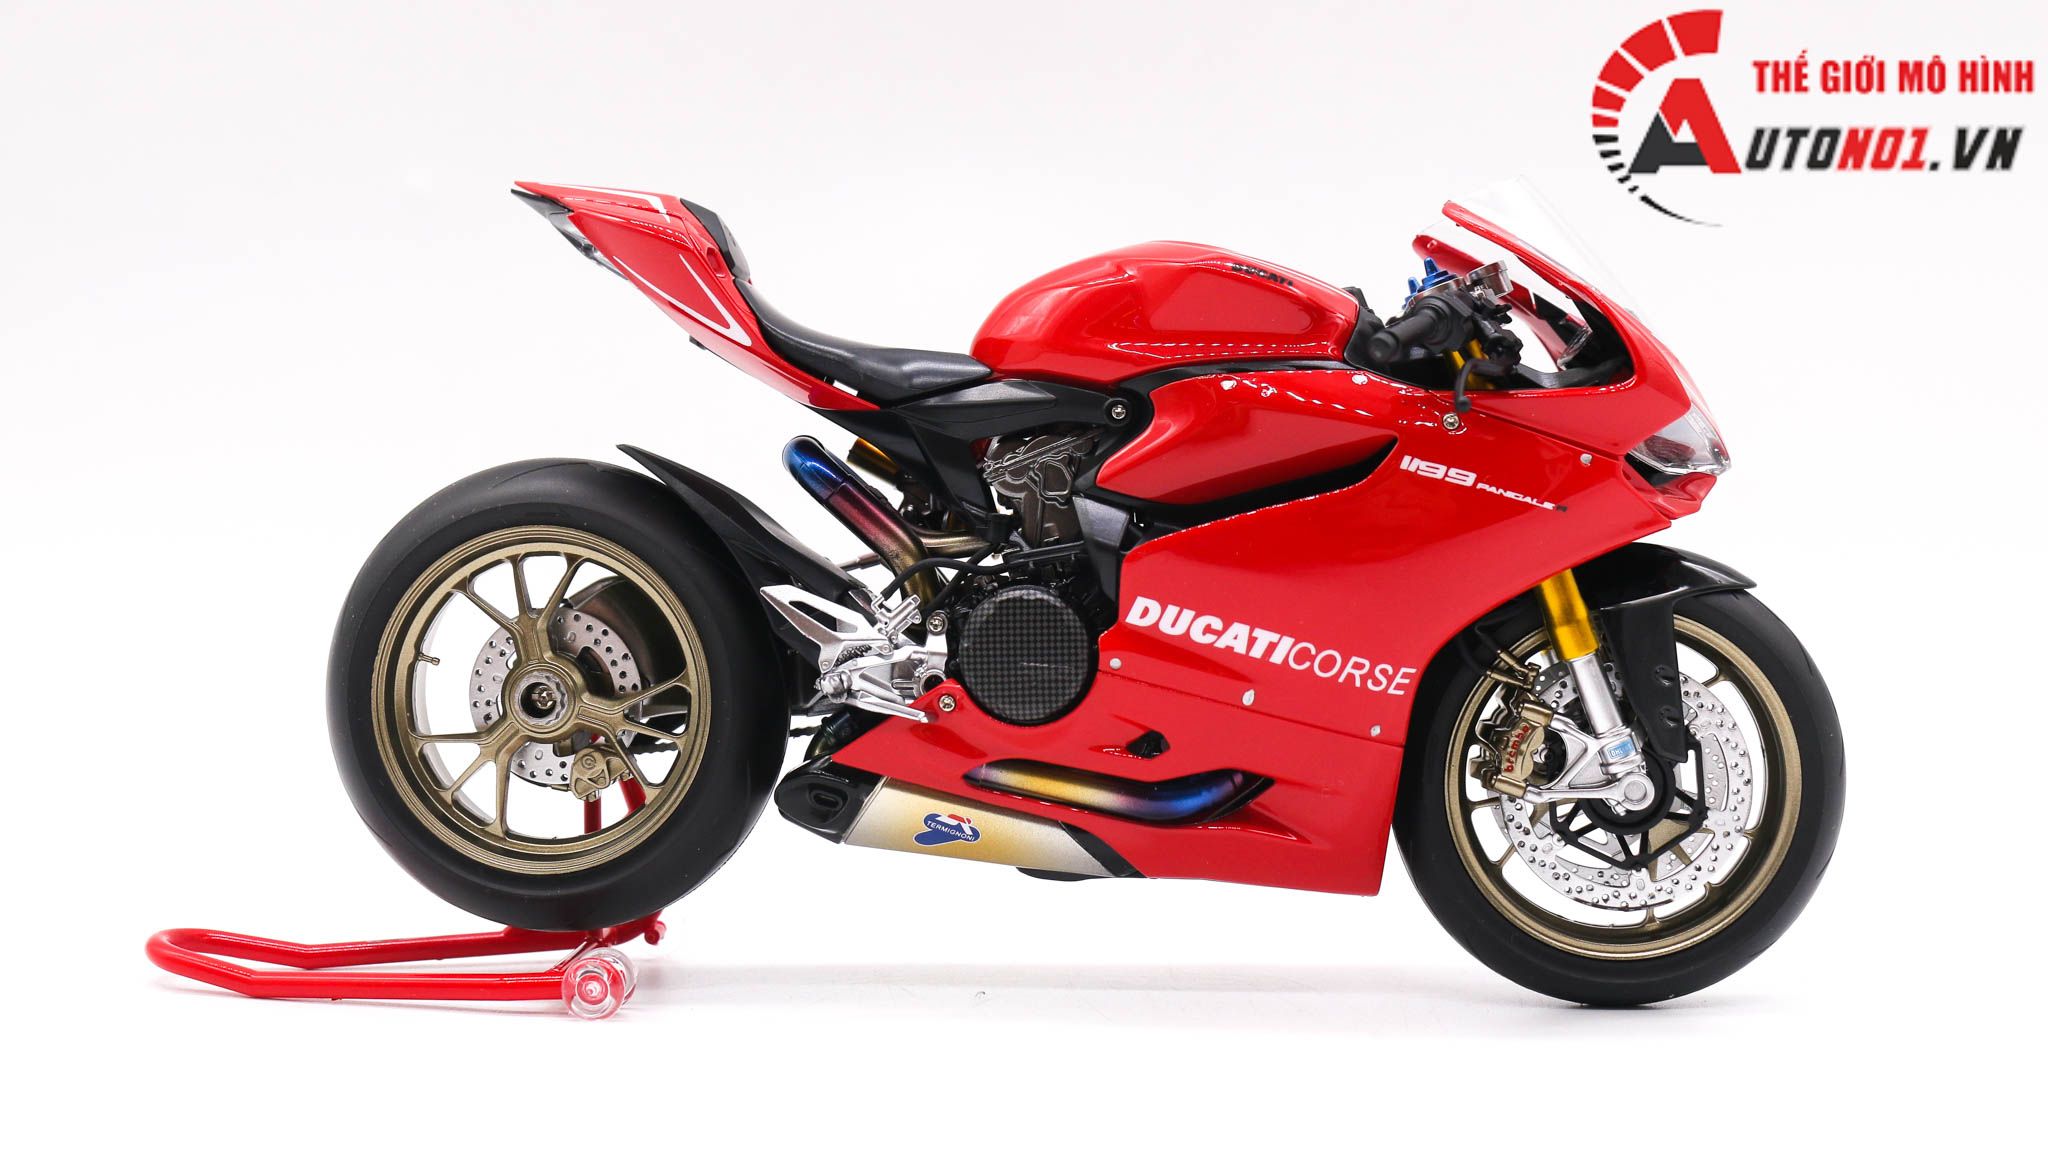  Mô hình xe cao cấp Ducati 1199 Corse Panigale Nồi Carbon Red 1:12 Tamiya D203 